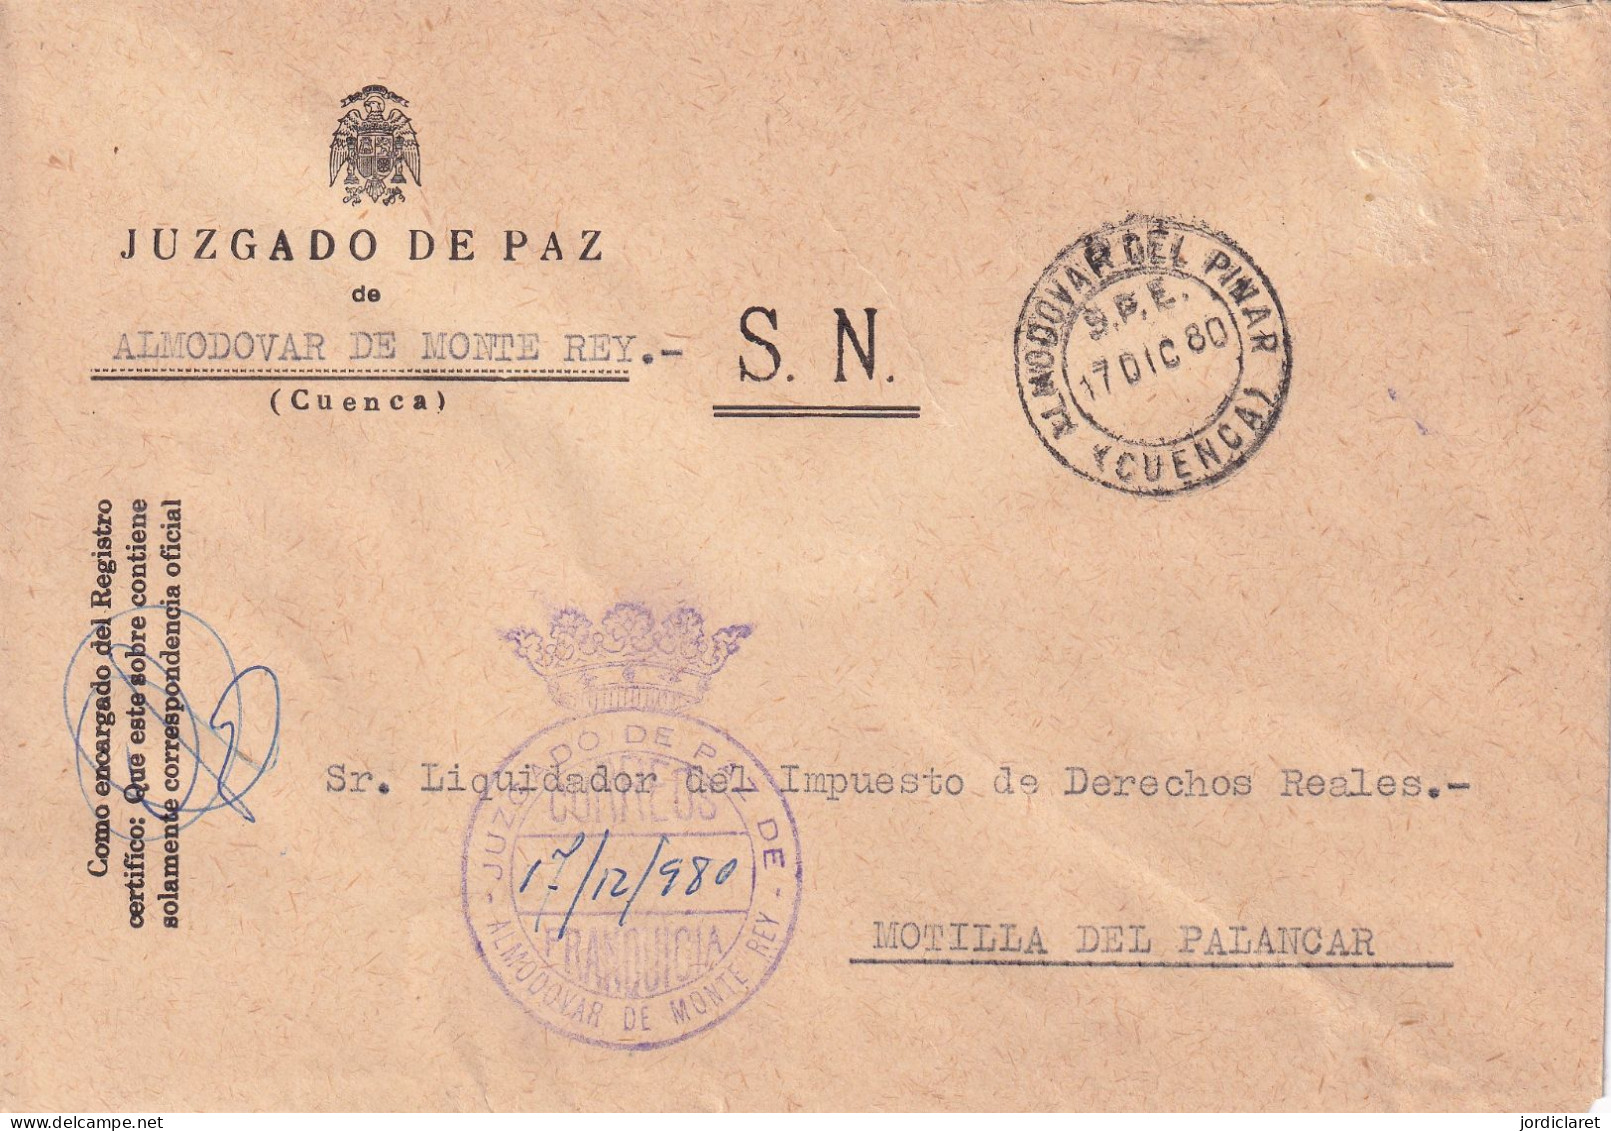 JUZGADO DE PAZ ALMODOVAR DE MONTE REY CUENCA 1980 - Postage Free